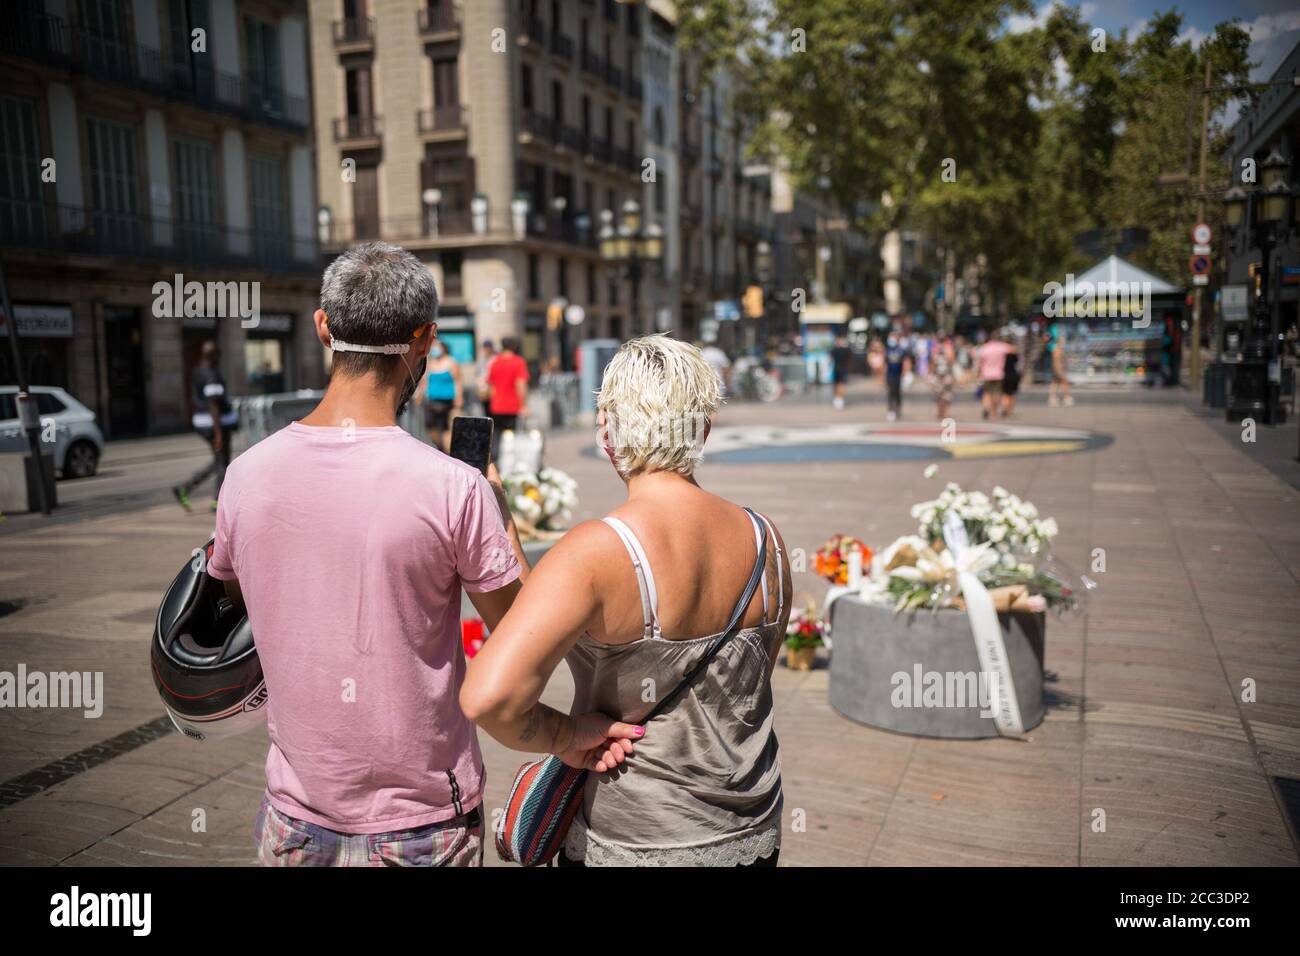 Ein Paar fotografiert die Tribute an die Opfer des Barcelona-Attentats.drei Jahre nach dem Anschlag auf Barcelona wird in Las Ramblas eine Hommage an die Opfer gemacht. Stockfoto